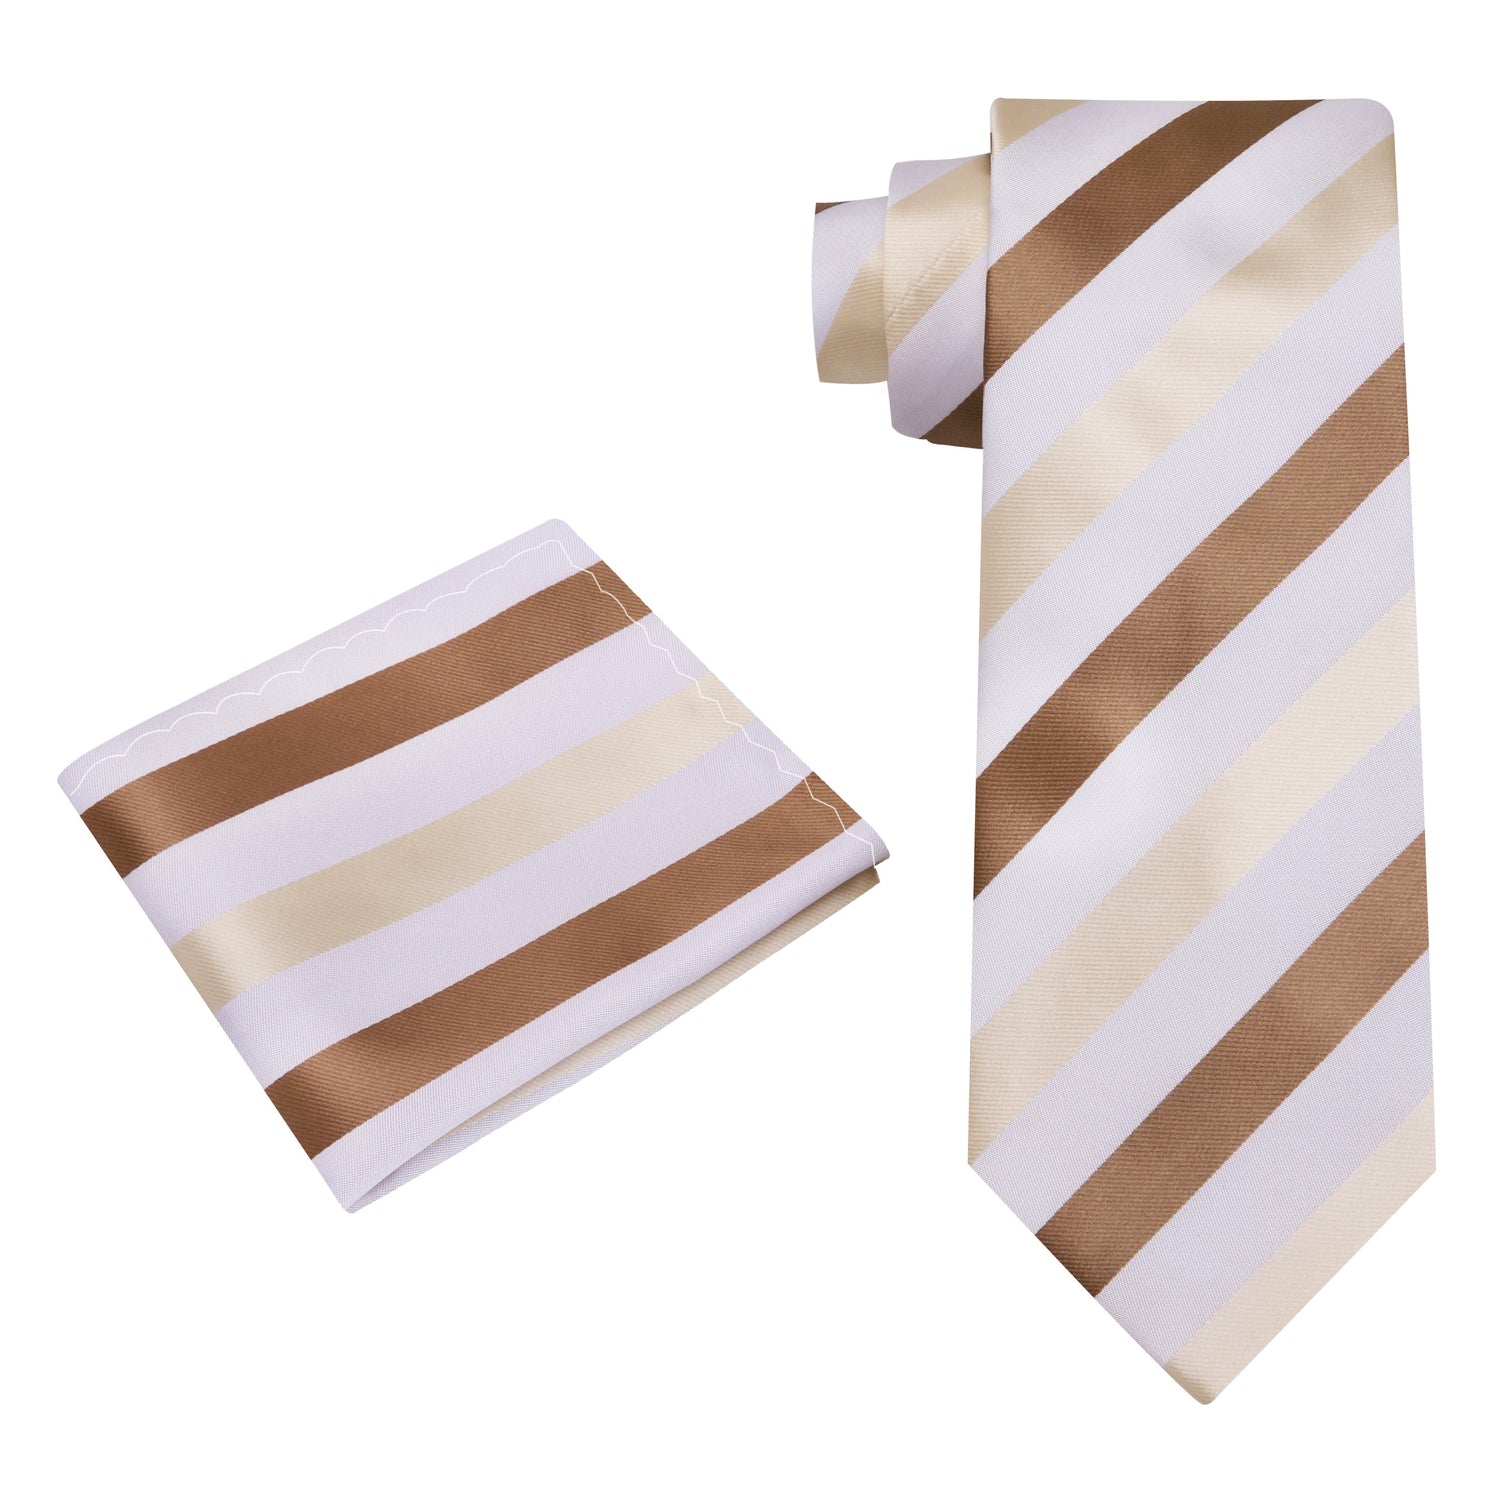 Alt View: A Brown, Light Brown, White Stripe Pattern Silk Necktie, Pocket Square